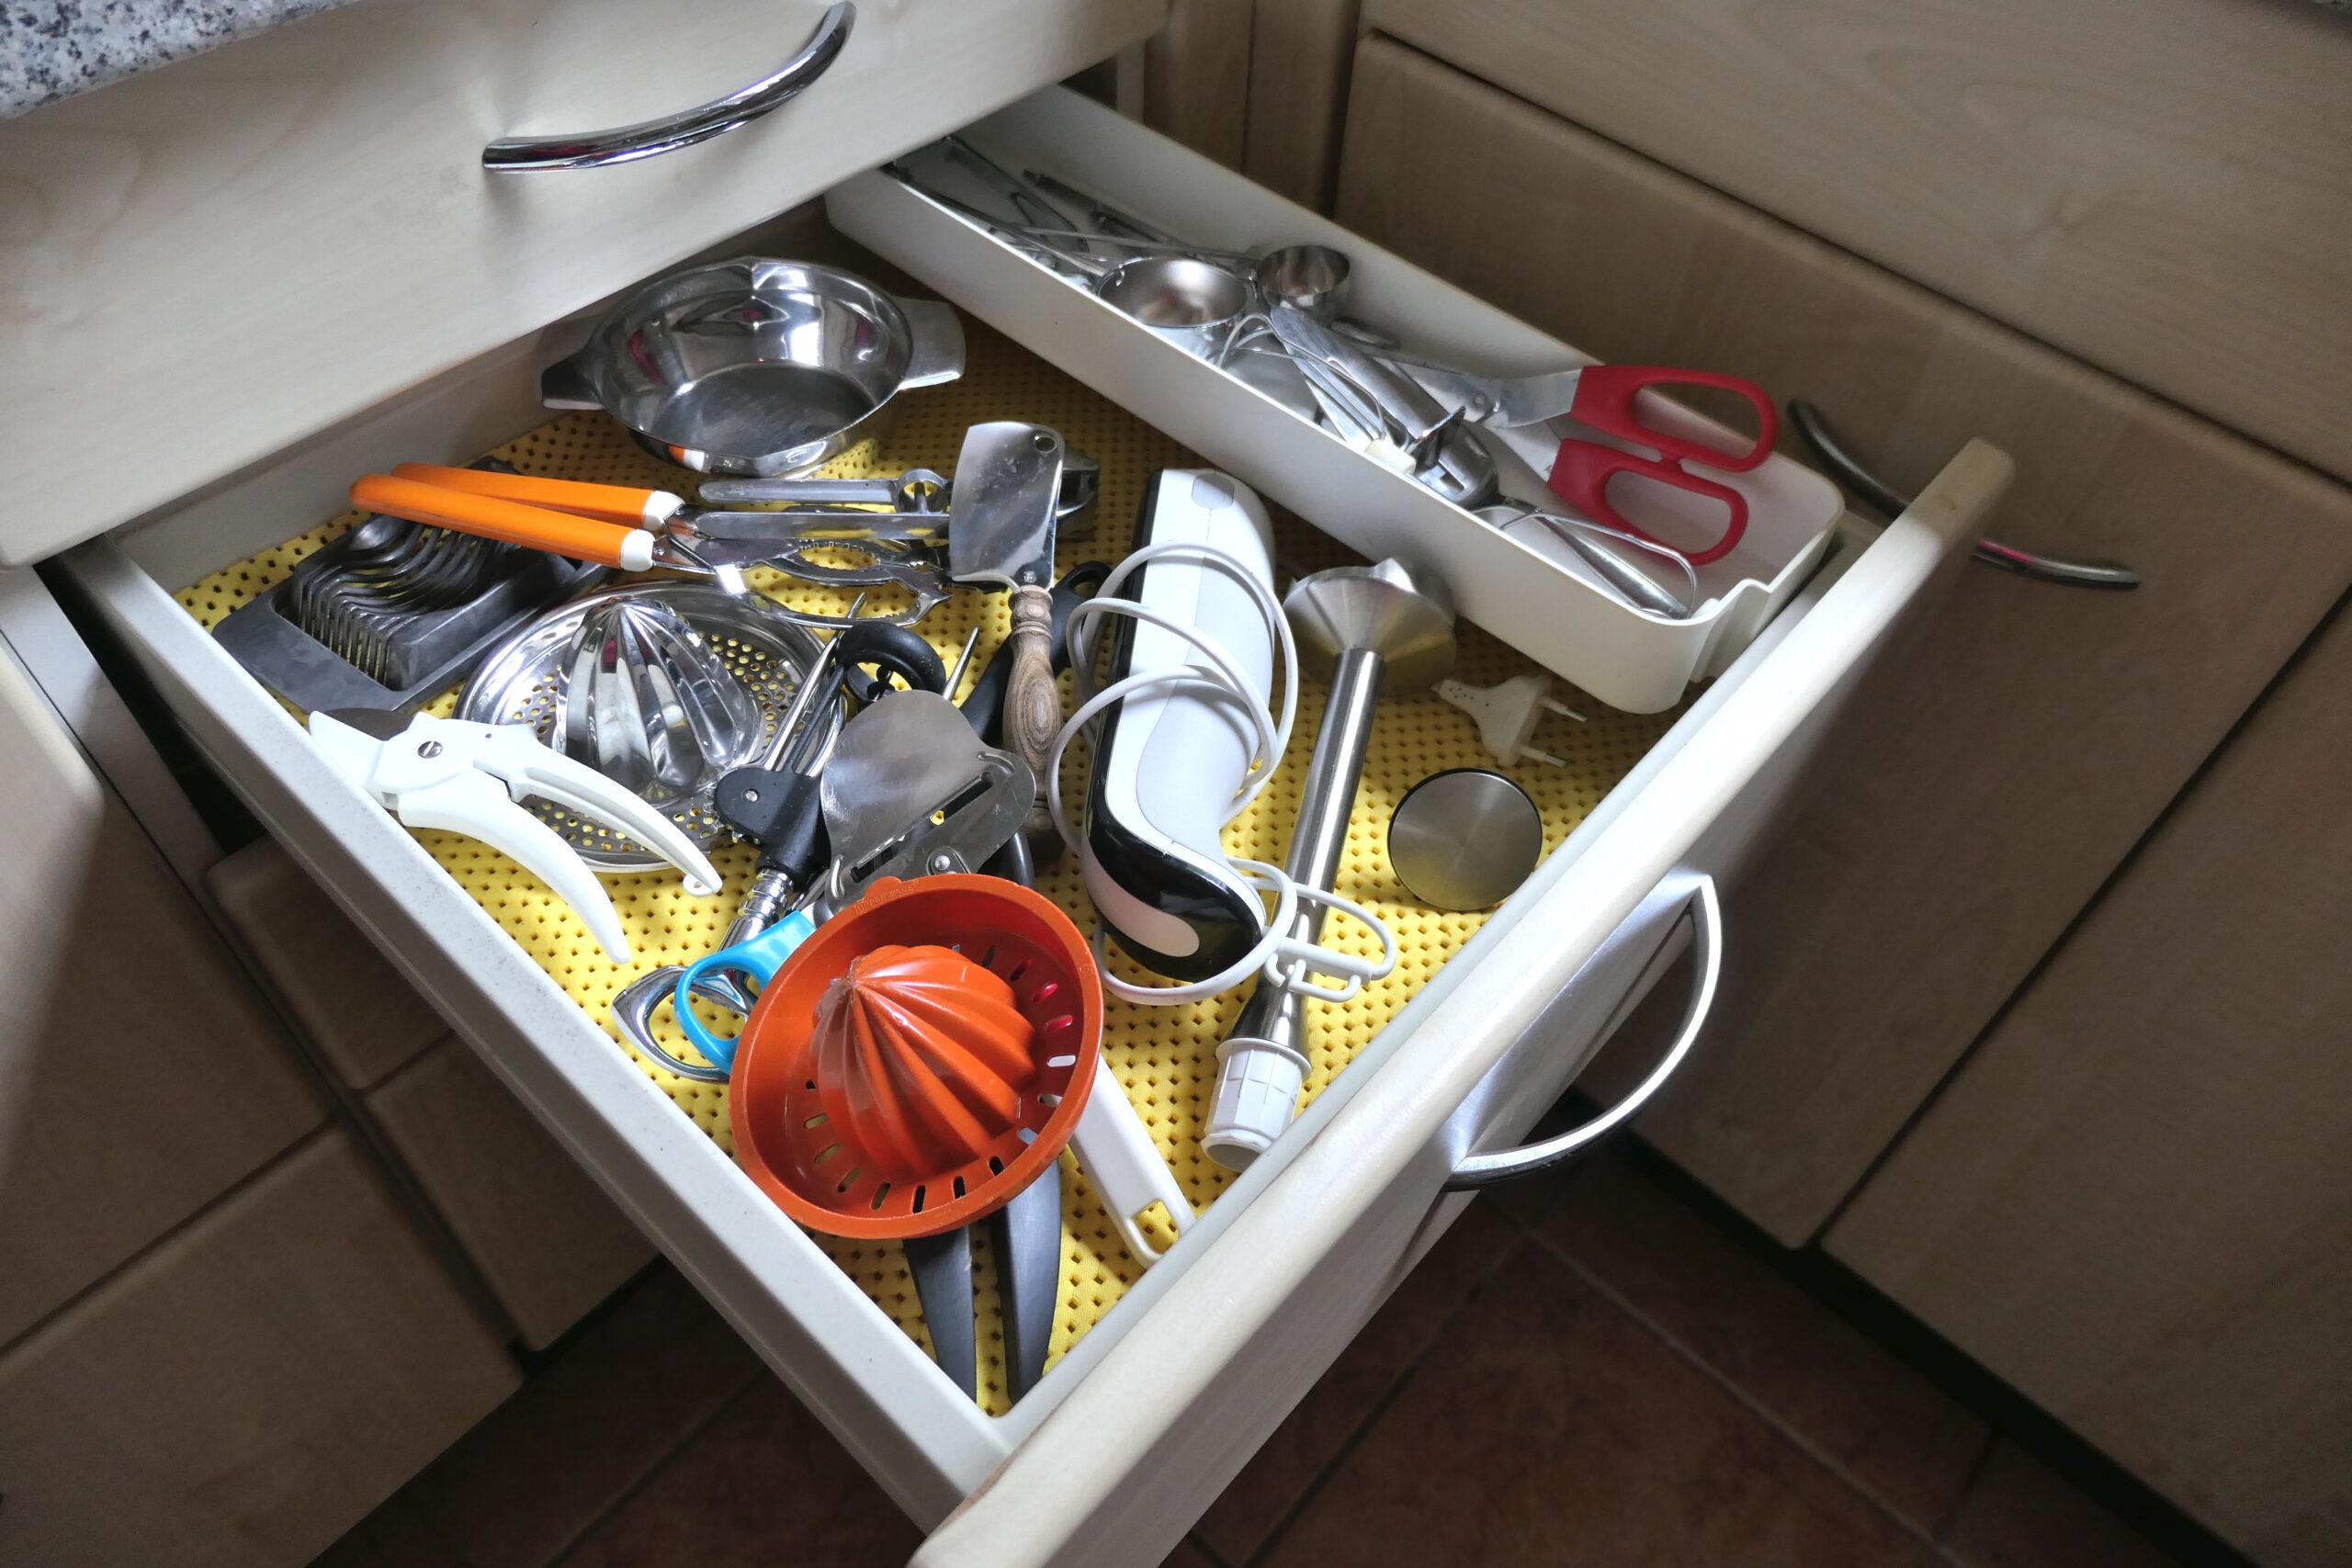 Kitchen utensils in an open drawer